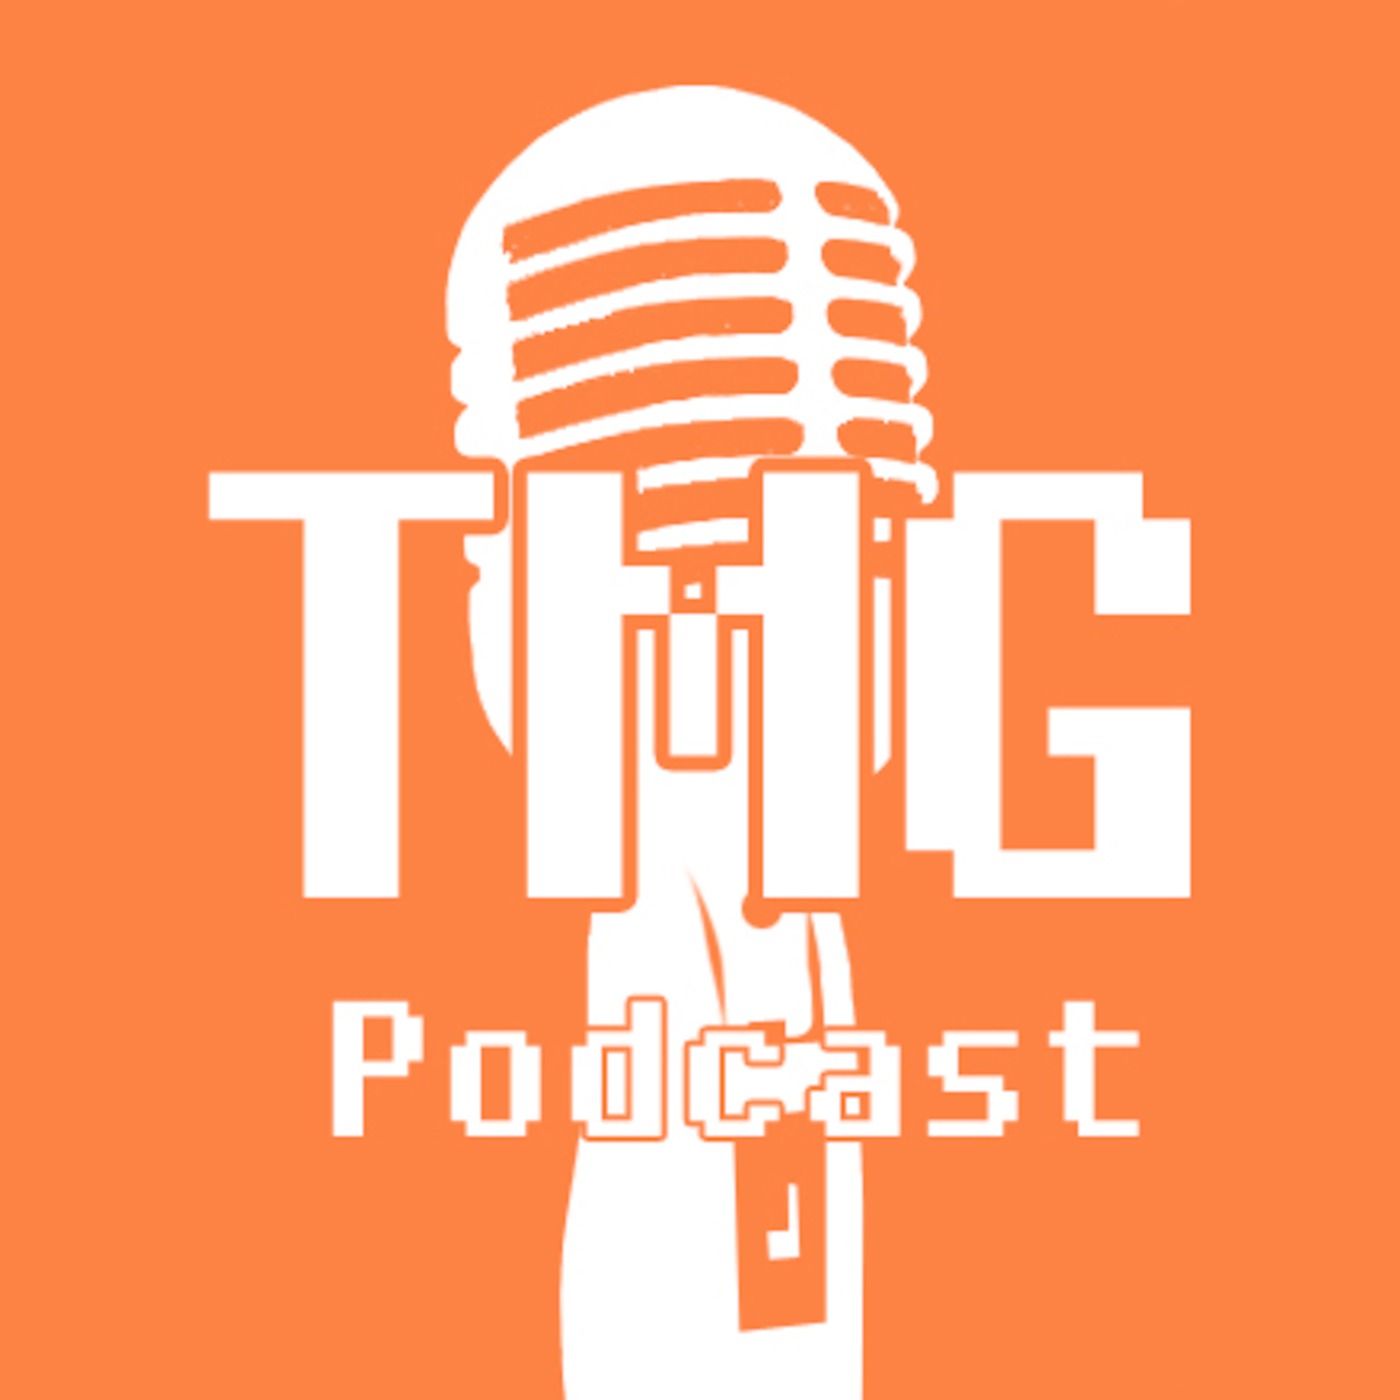 TMG Podcast